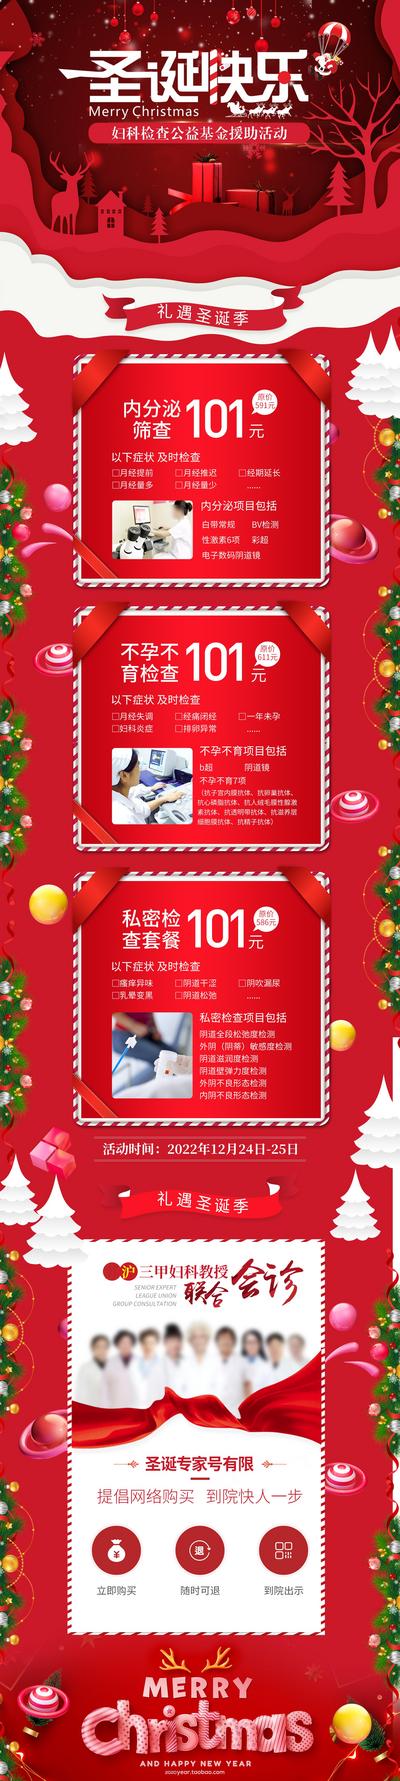 【南门网】广告 海报节日 圣诞 专题 男科 女性 健康 私密 三甲